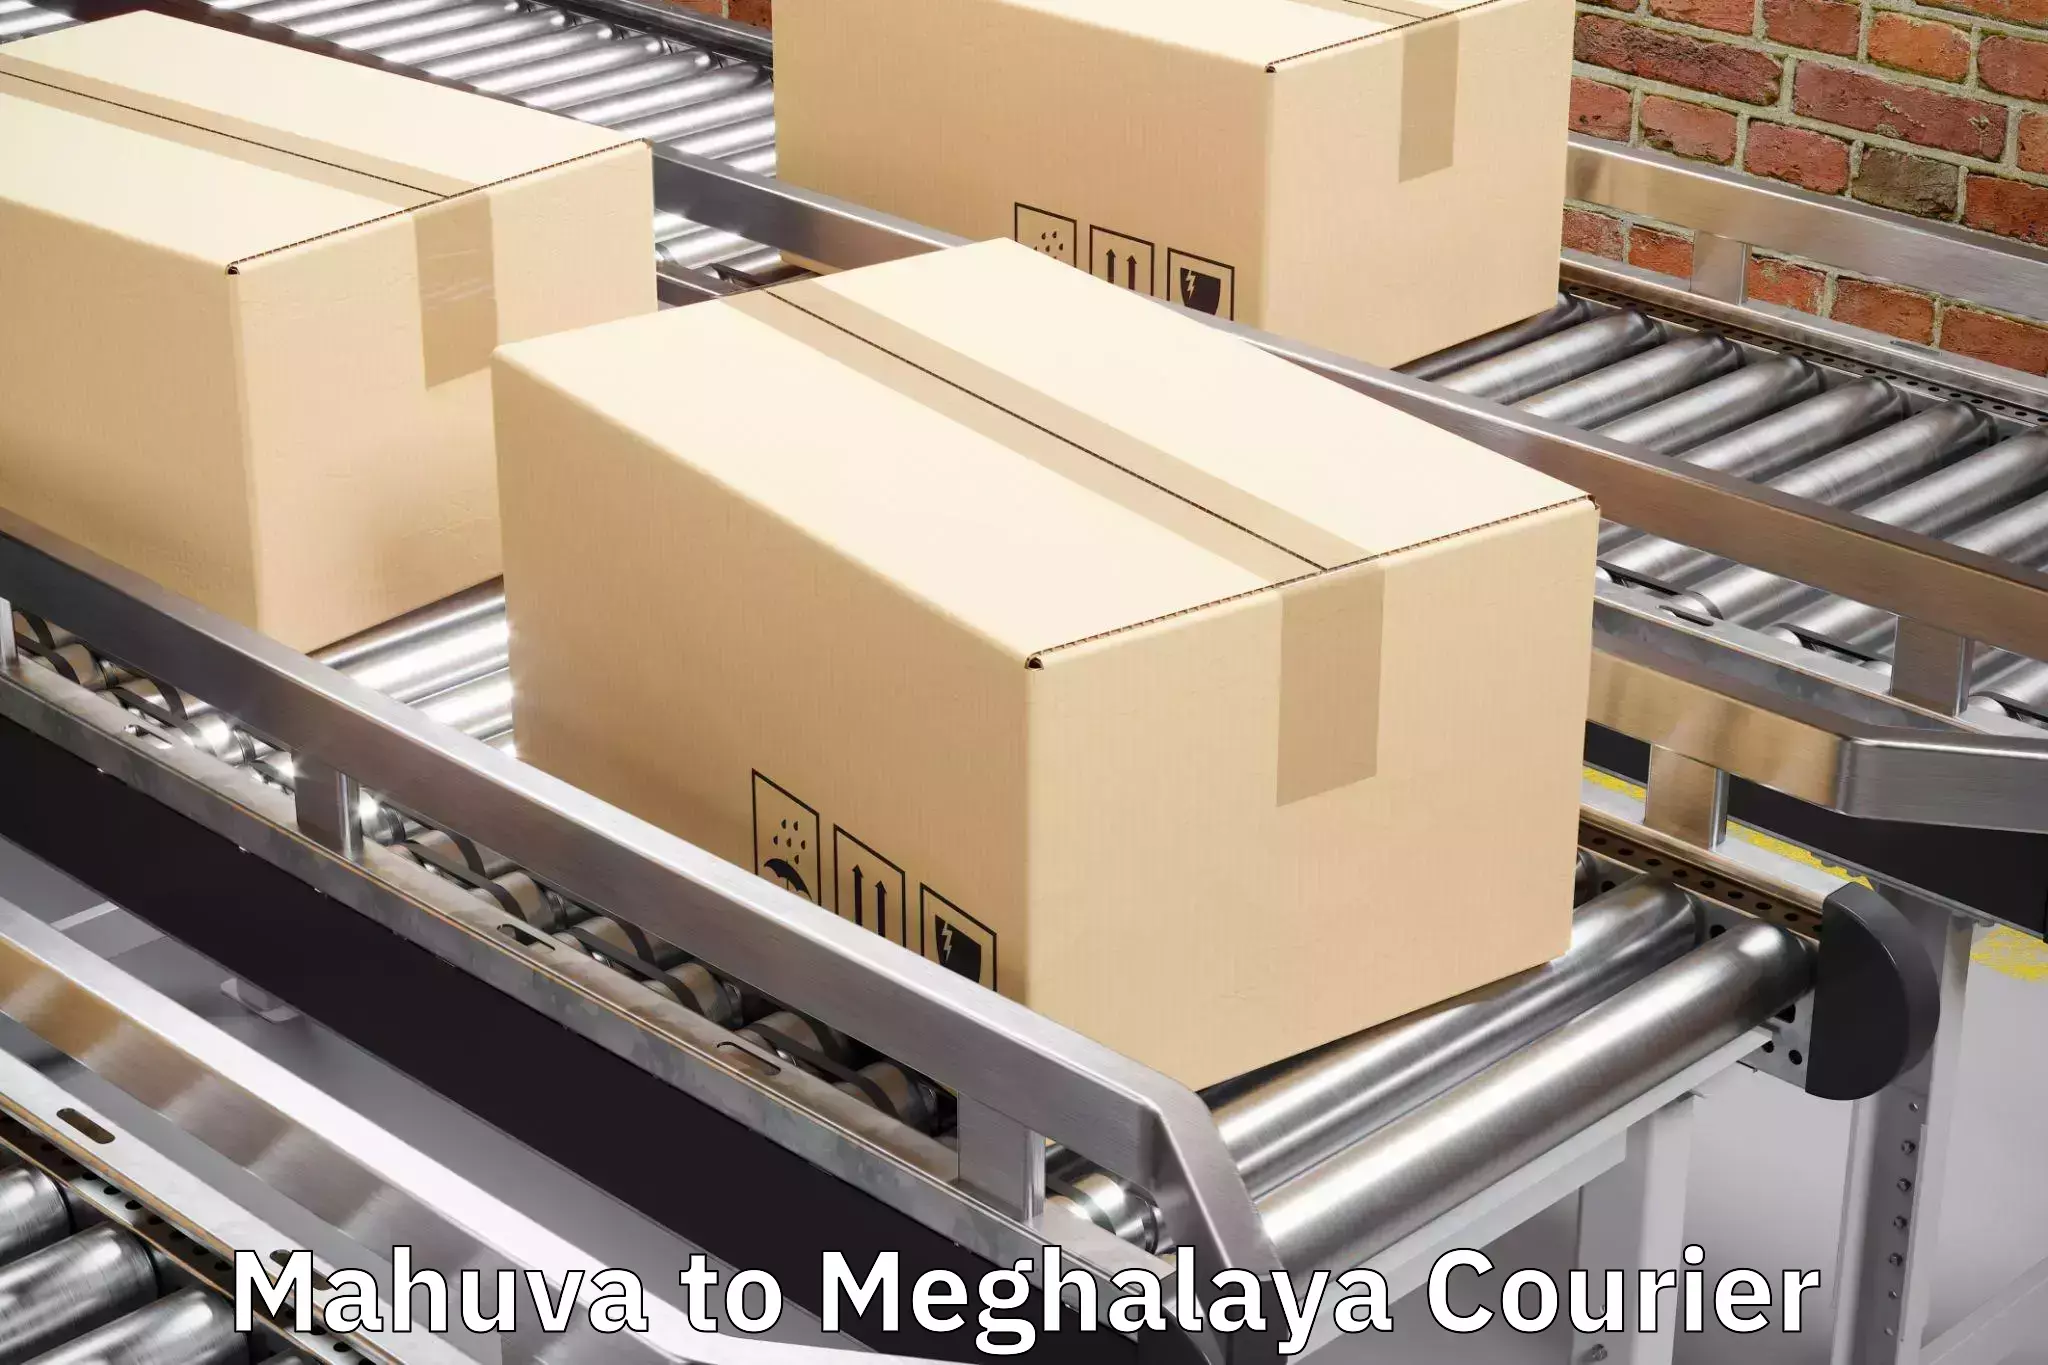 Luggage transport guidelines Mahuva to Meghalaya